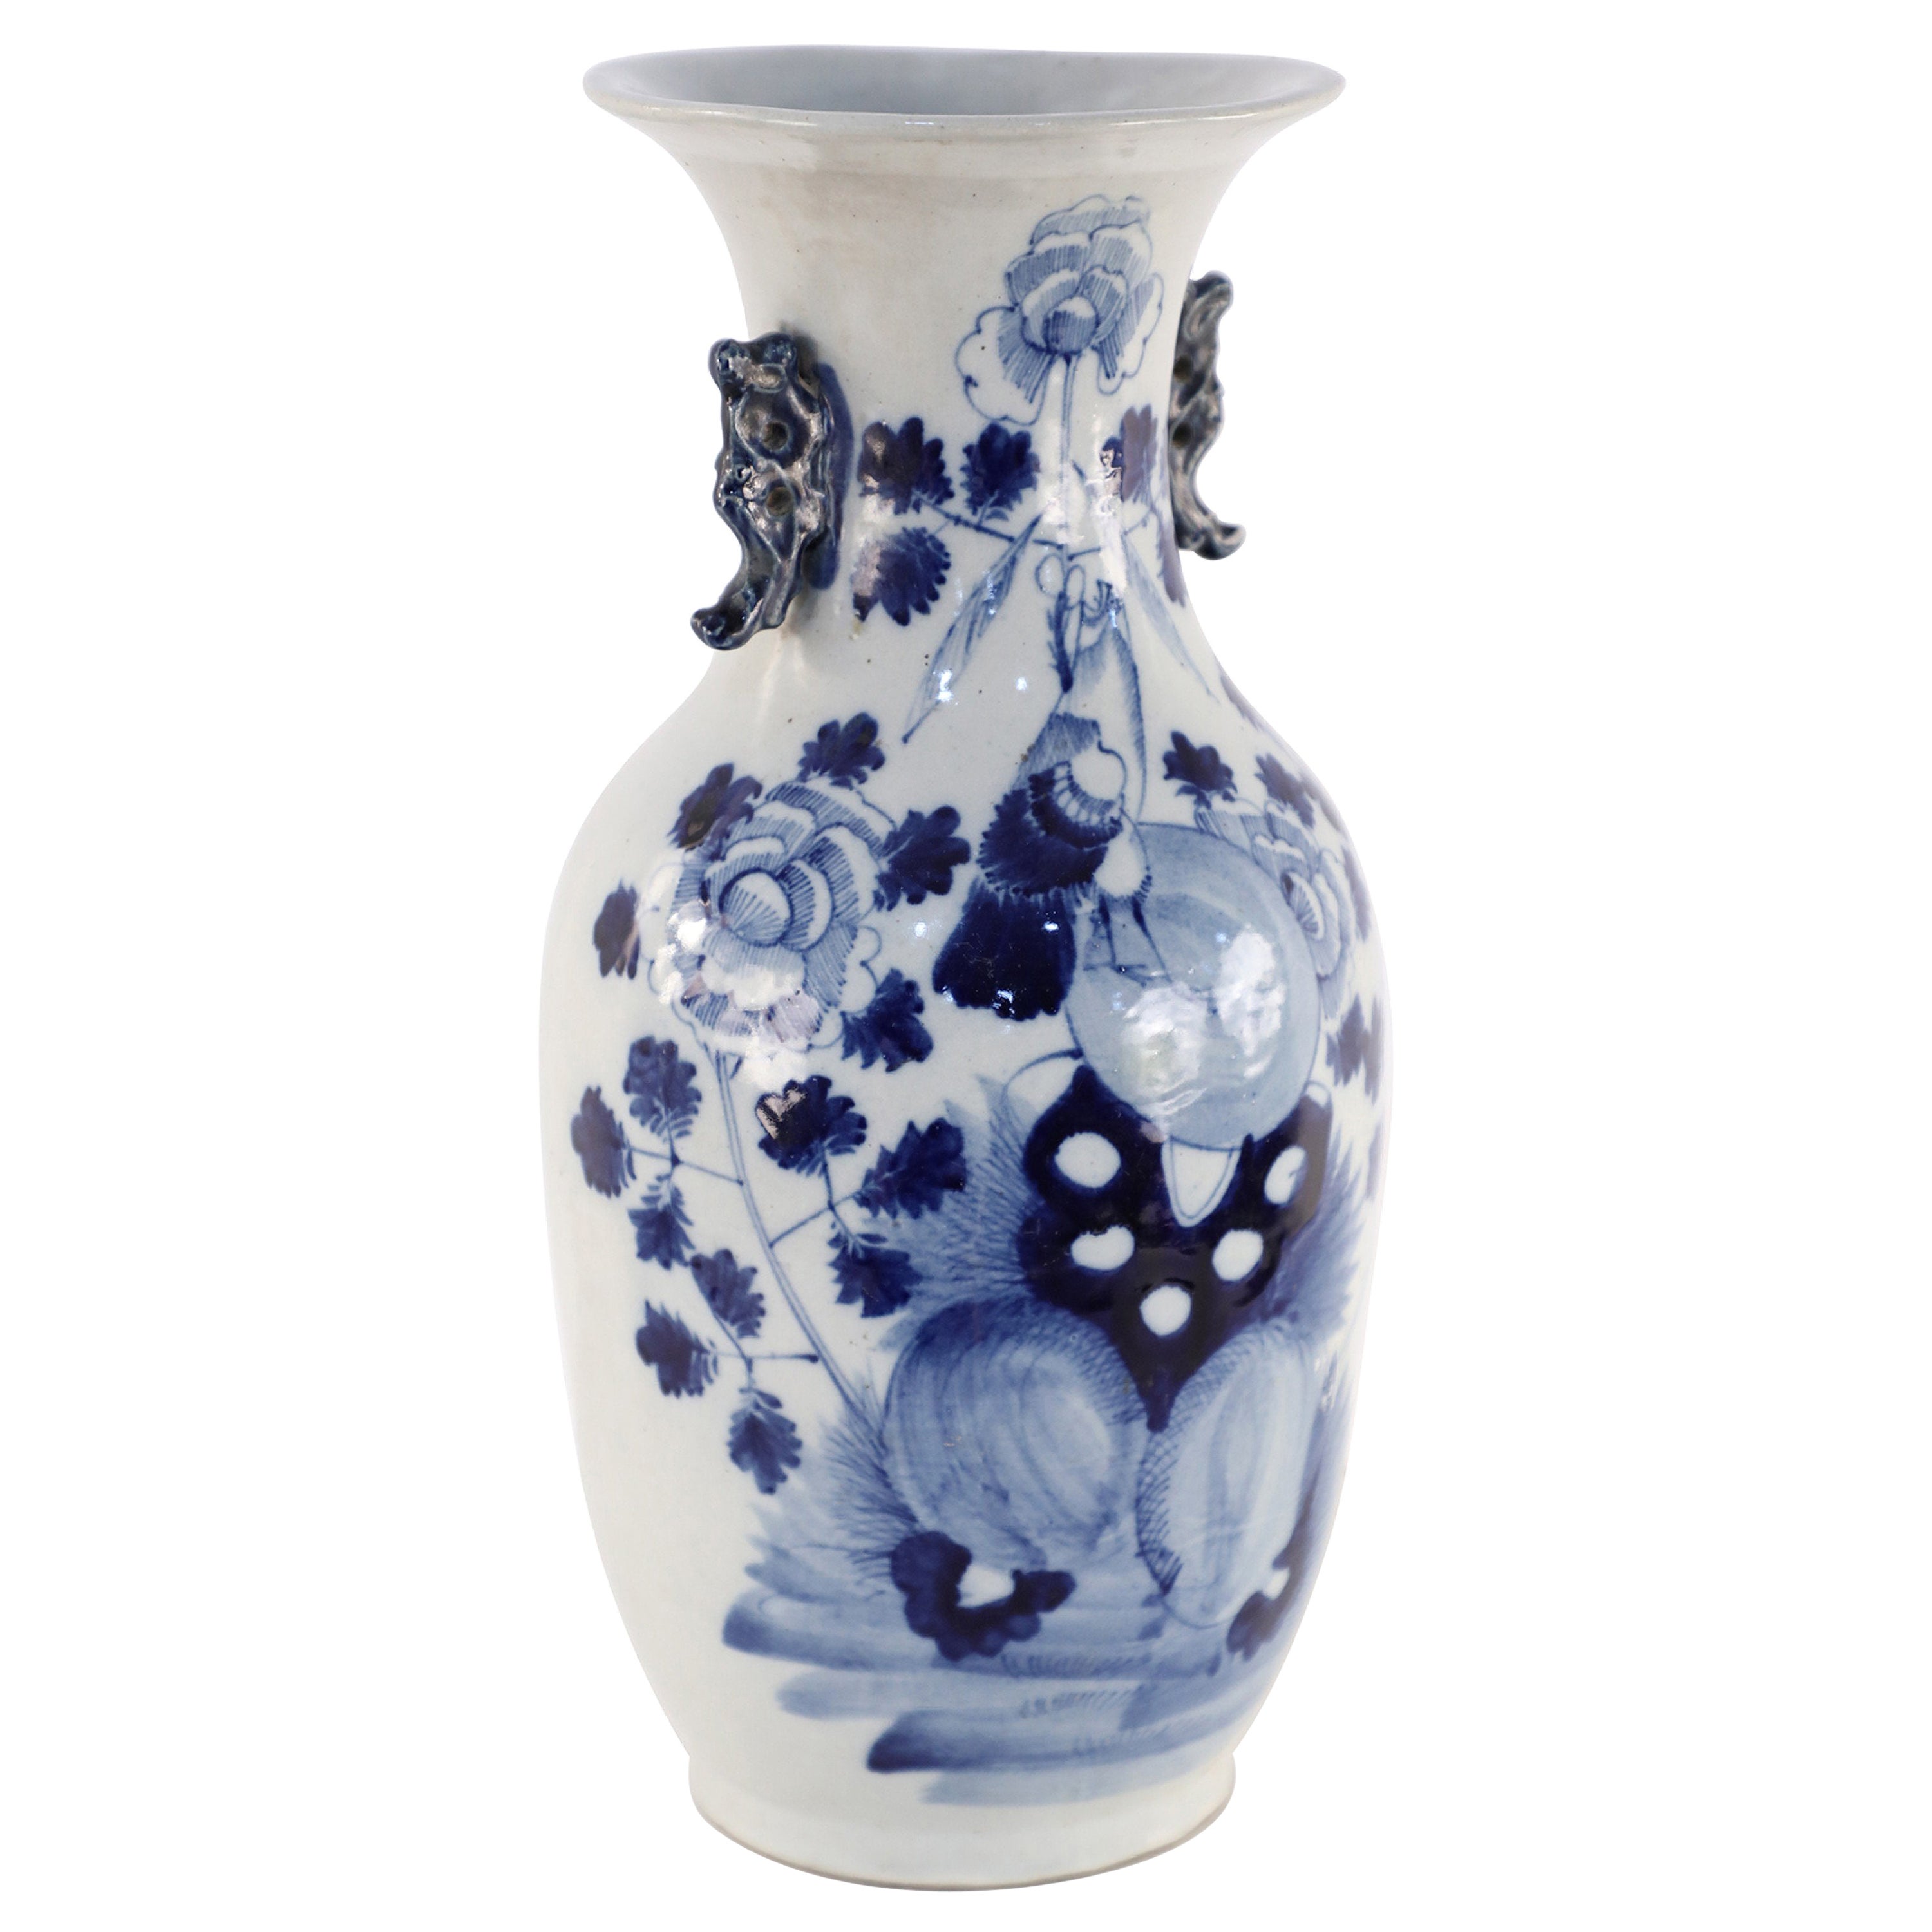 Urne chinoise en porcelaine blanche et bleue à motifs floraux